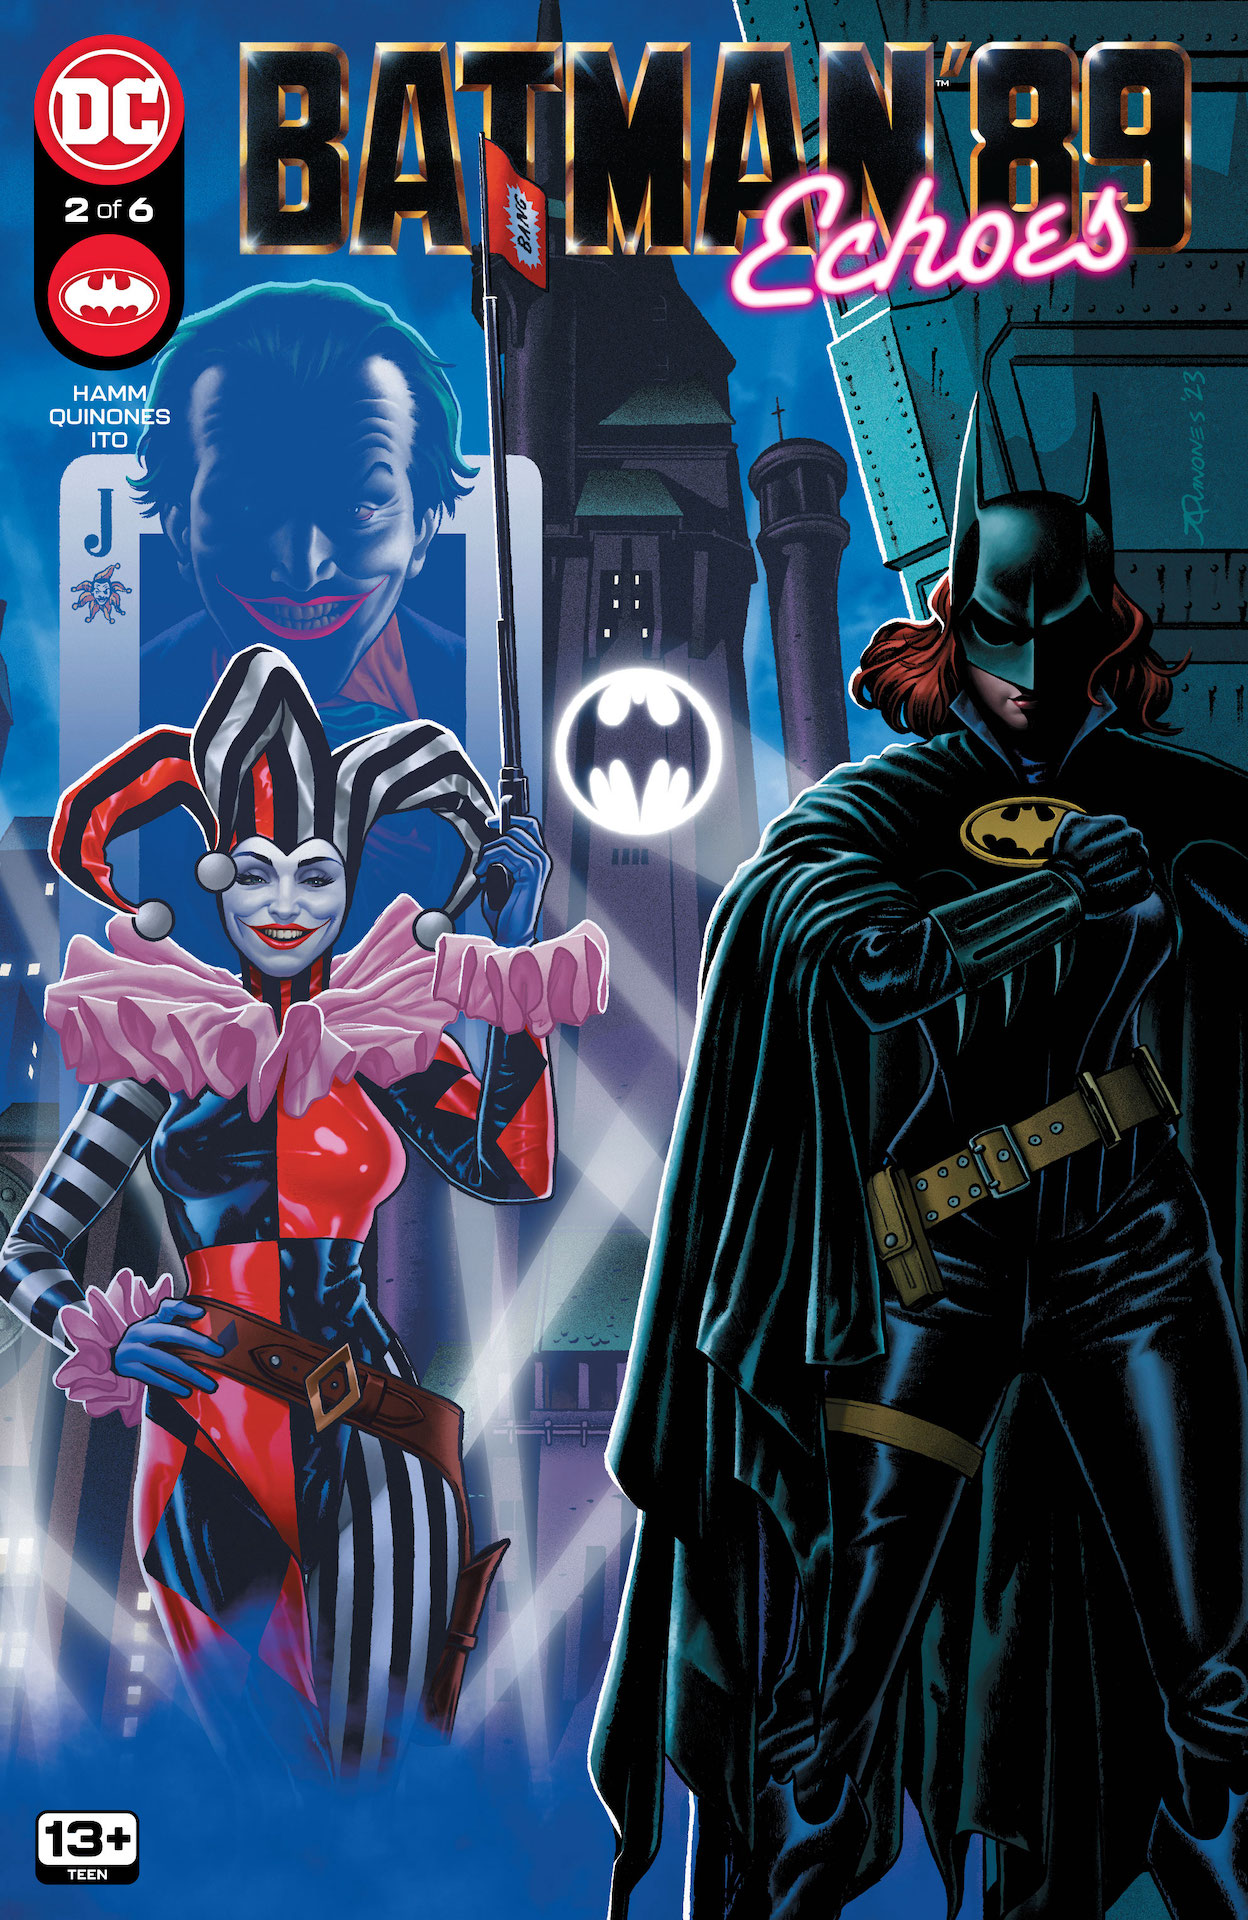 DC Preview: Batman '89: Echoes #2